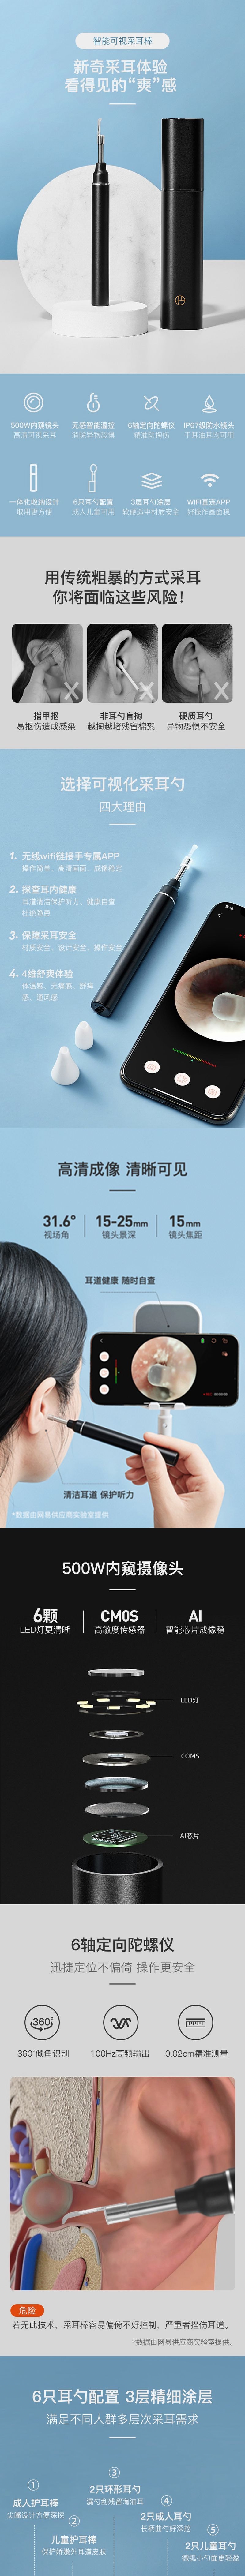 【香港DHL 5-7日达】网易智造 无线智能高清可视采耳勺 静谧黑